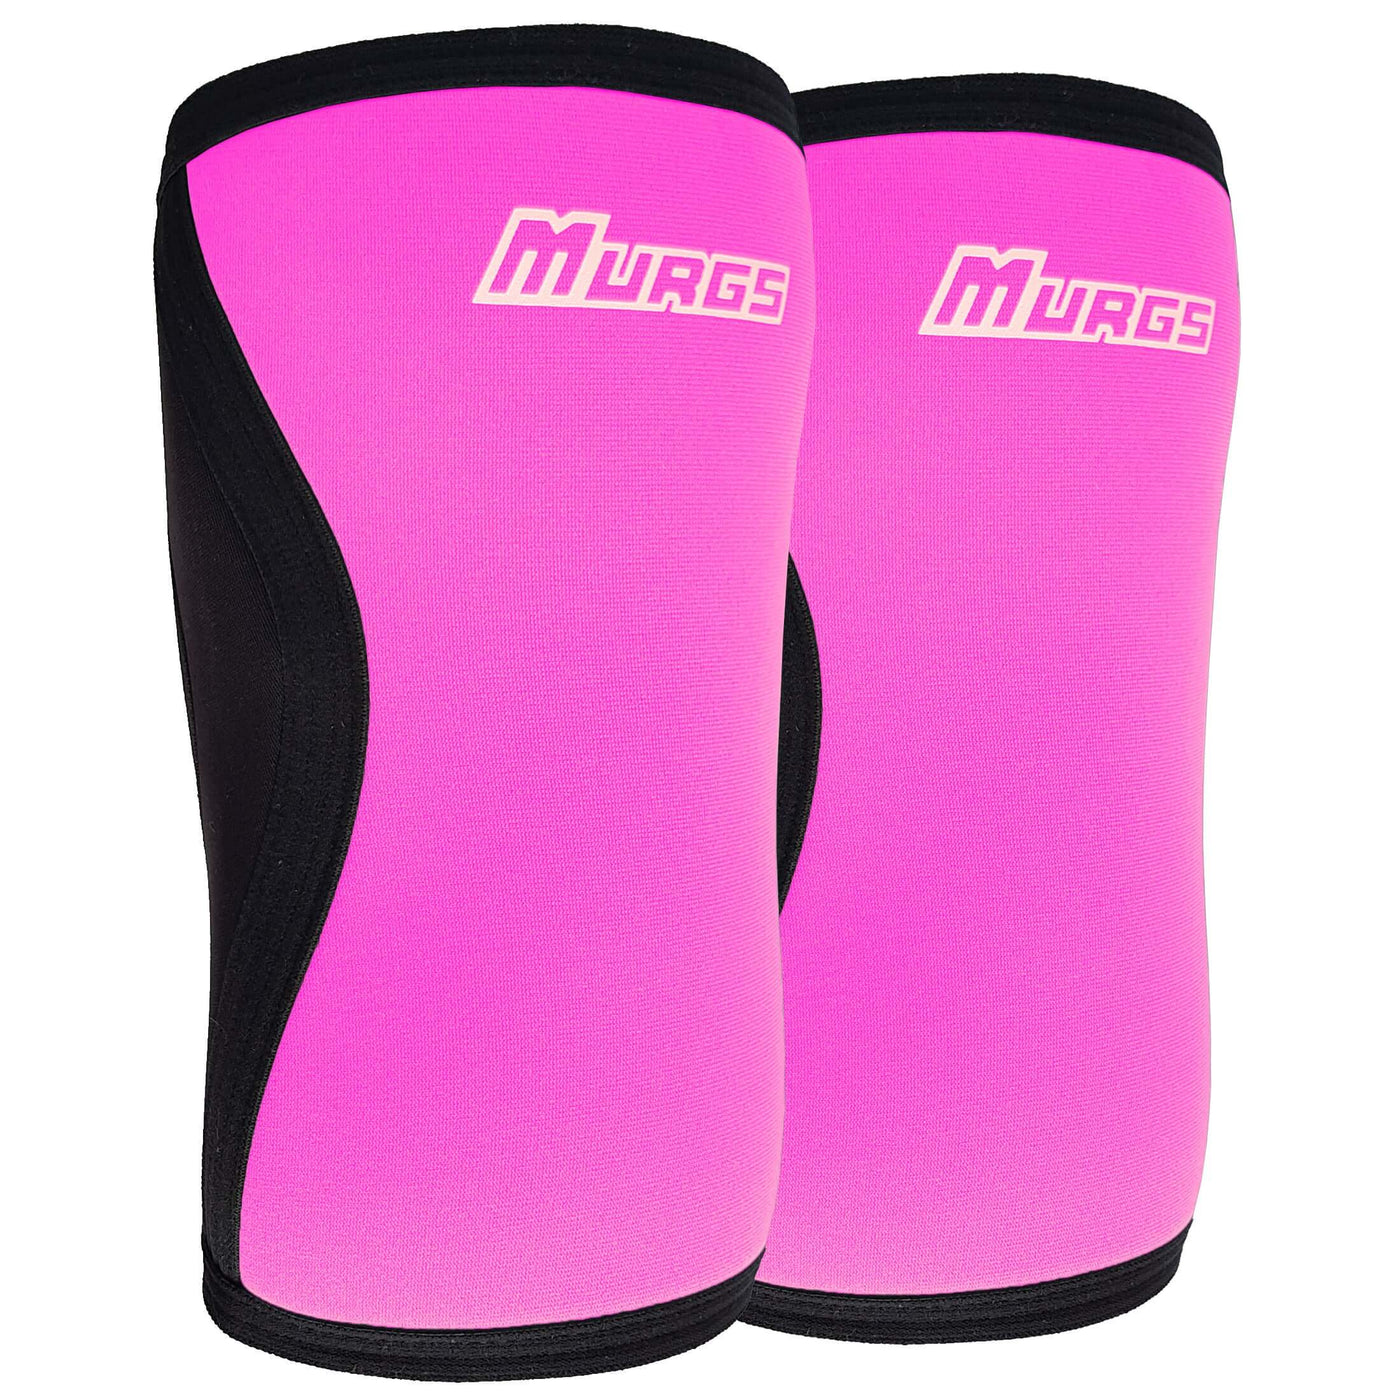 Murgs 7mm knee sleeves pair Pink